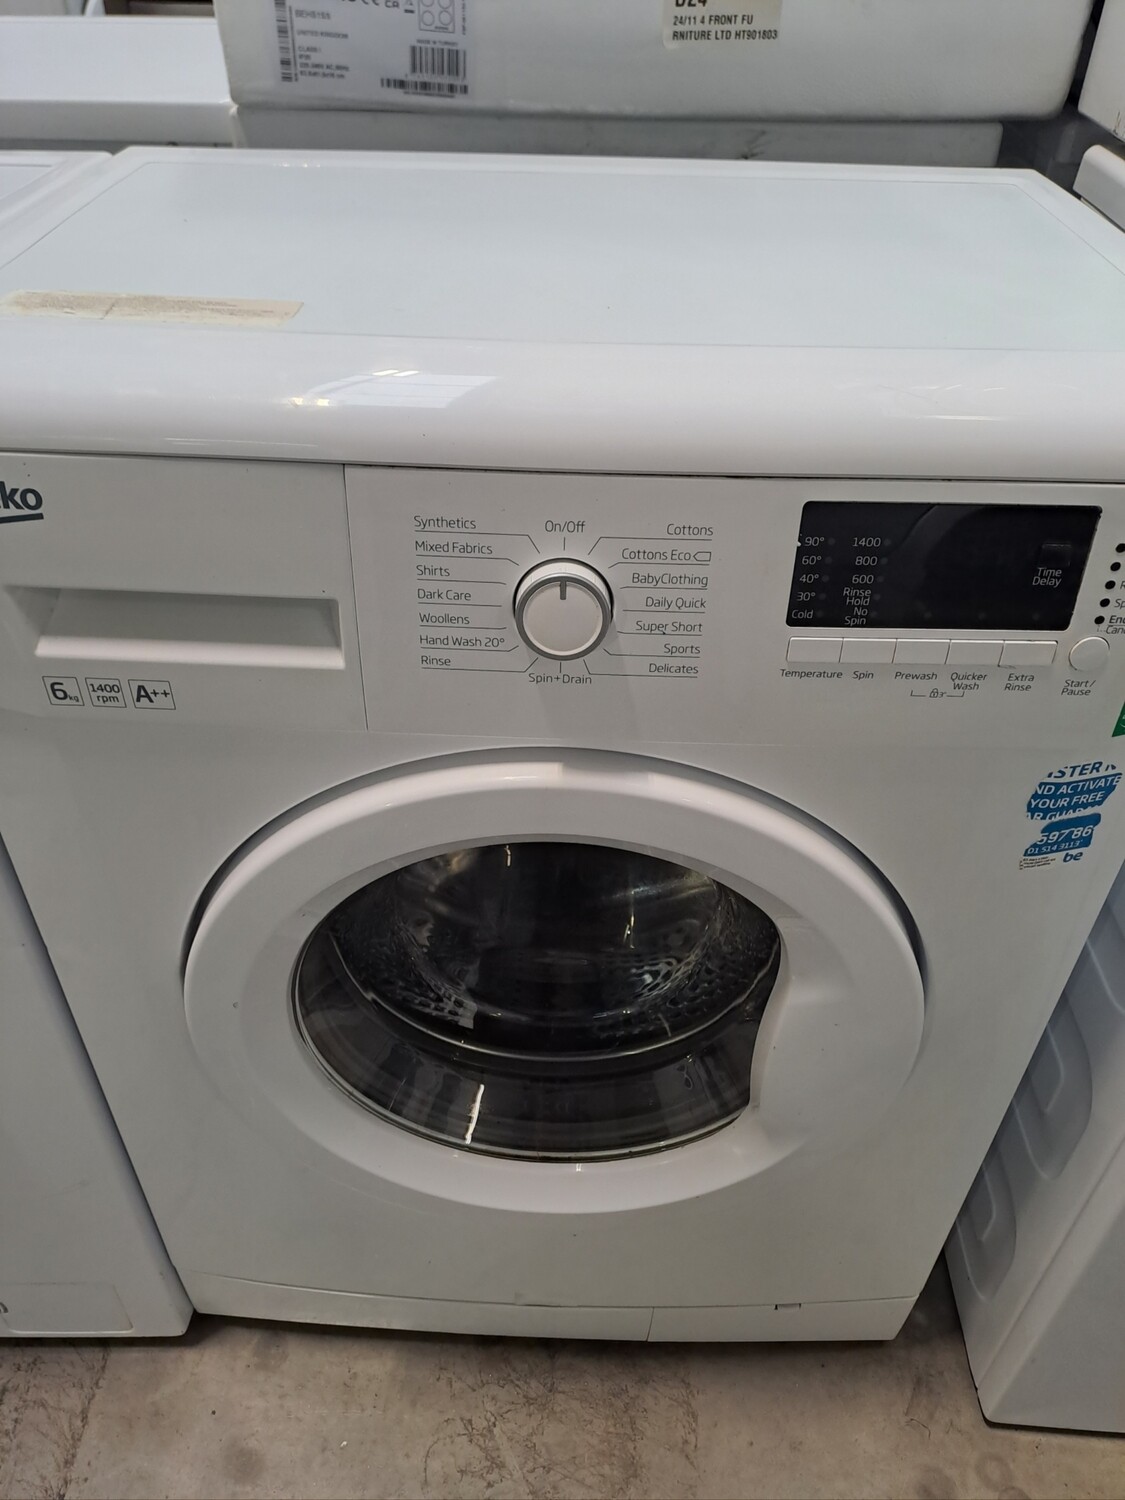 Beko WMB61432W 6kg Load 1400 Spin Washing Machine - White - Refurbished - 6 Month Guarantee